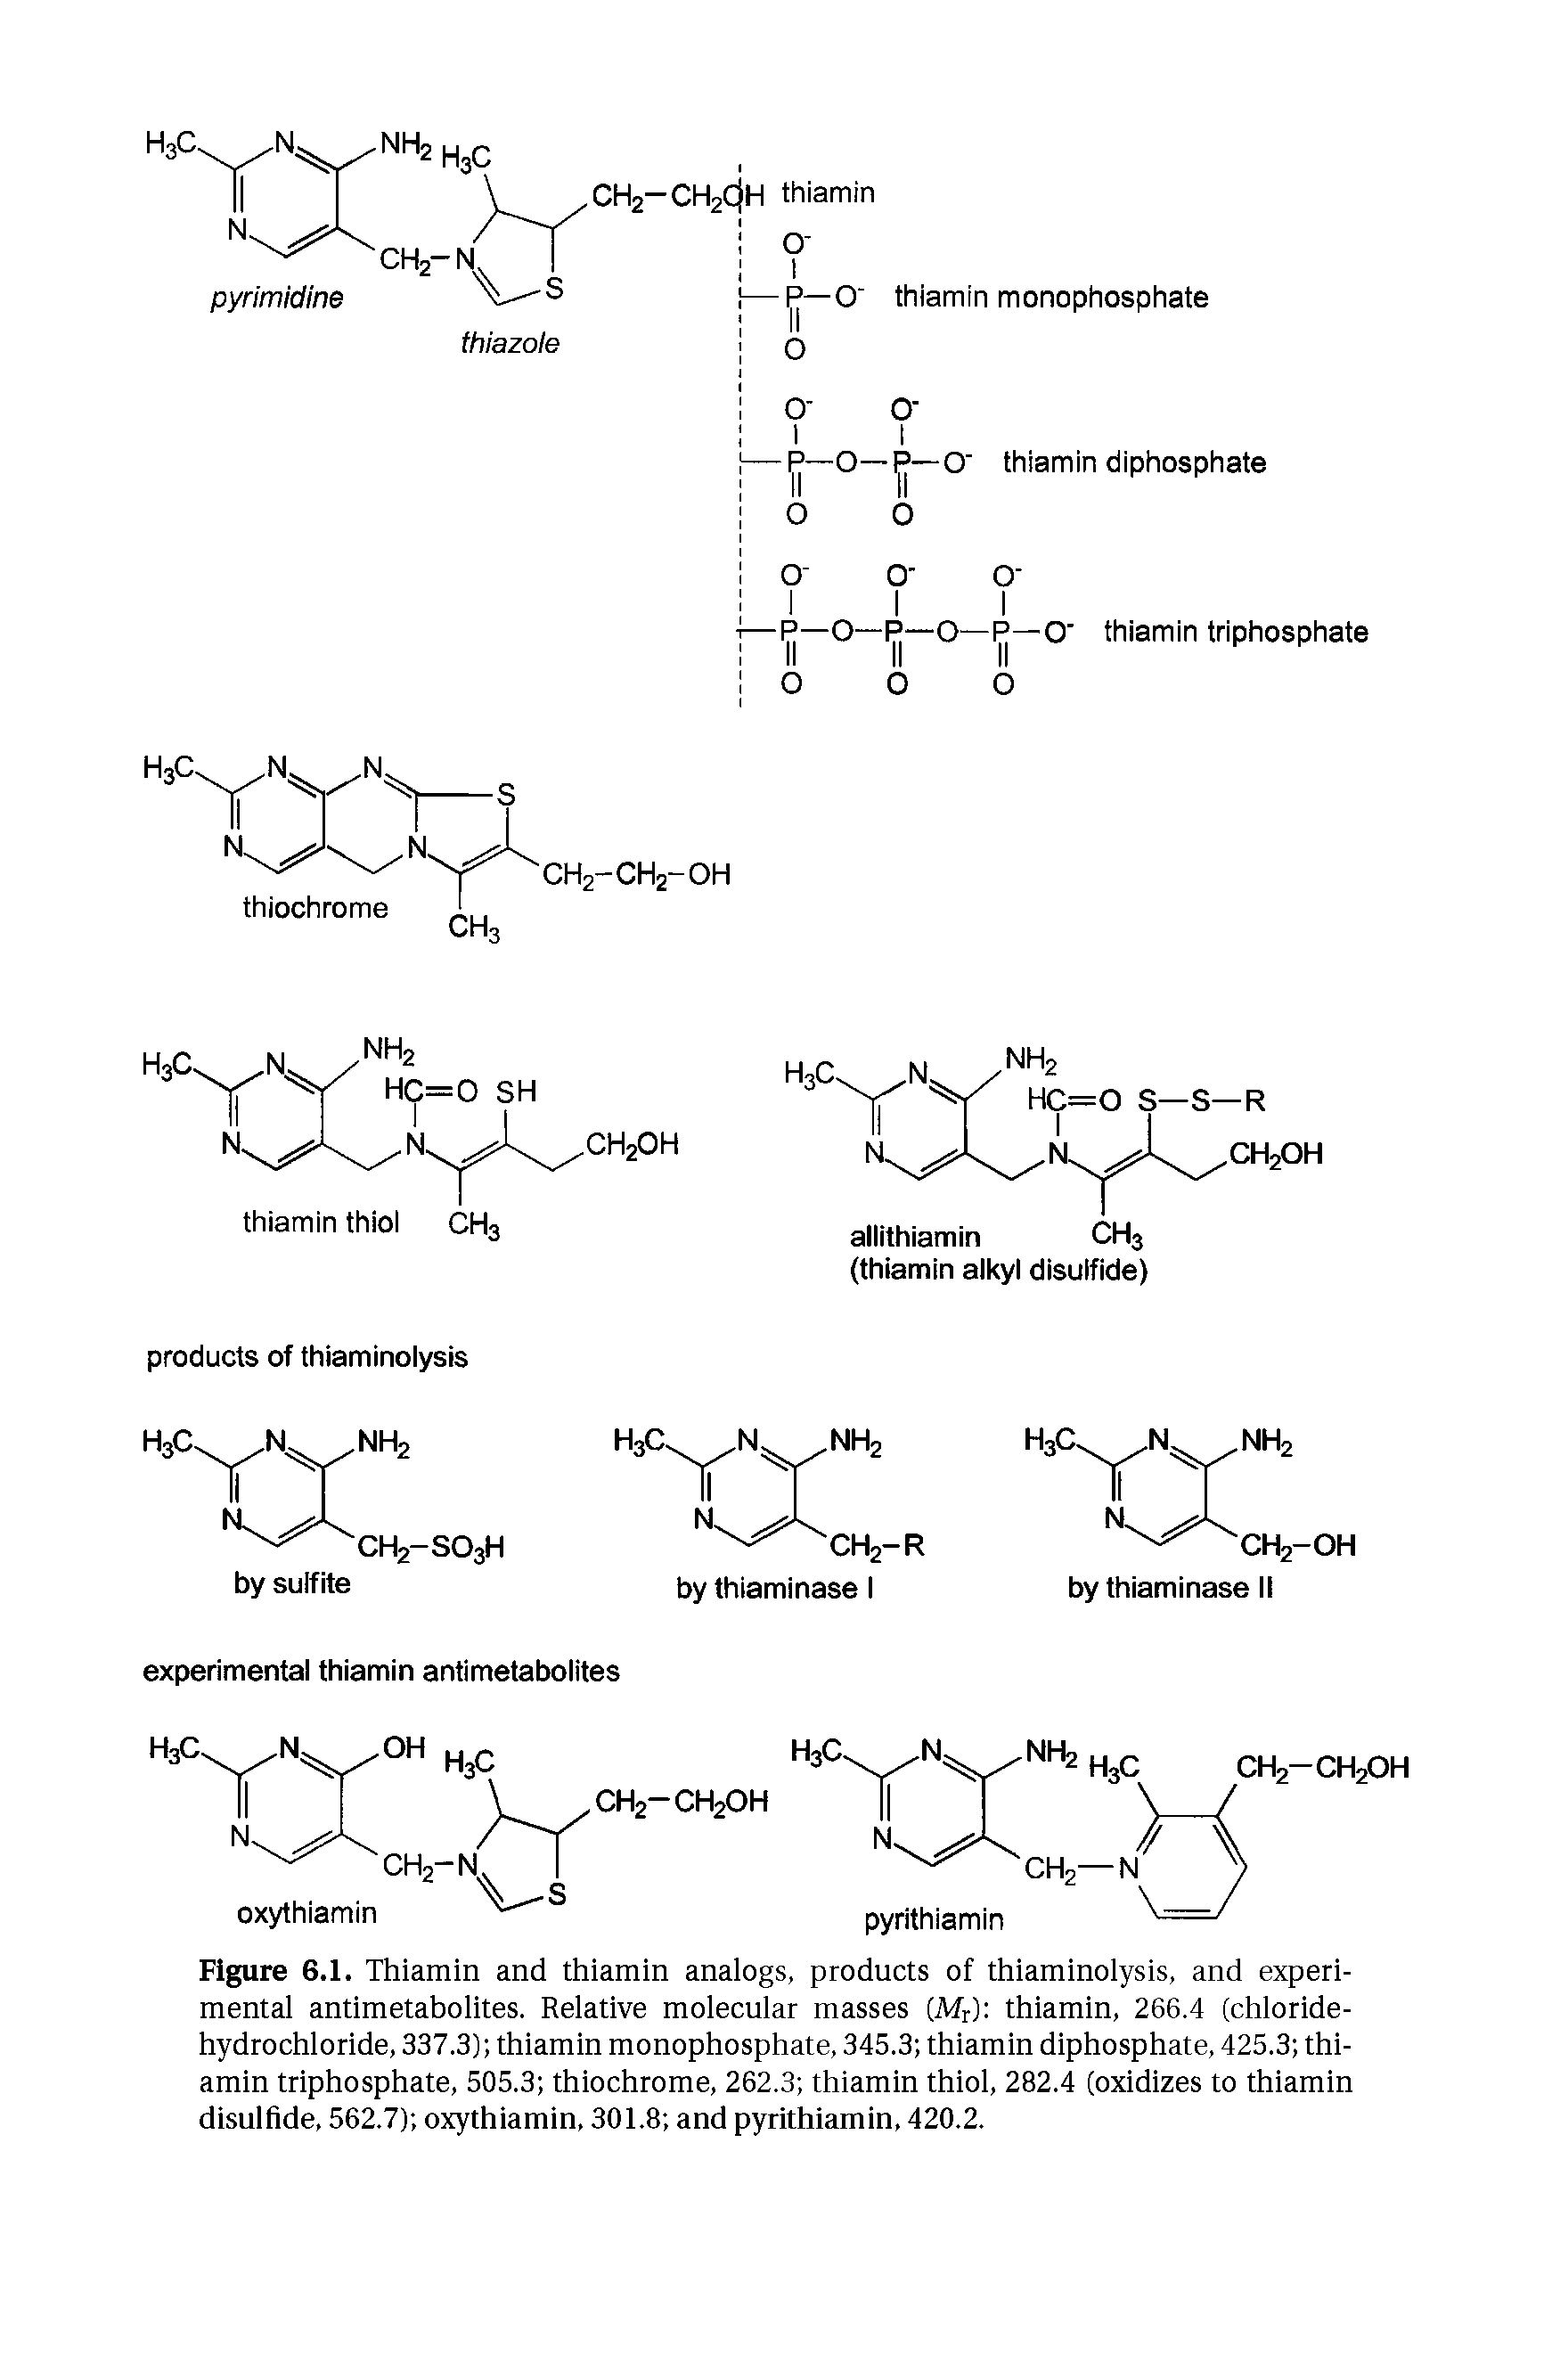 Figure 6.1. Thiamin and thiamin anaiogs, products of thiaminoiysis, and experi-mentai antimetahoiites. Reiative moiecuiar masses (Mr) thiamin, 266.4 (chioride-hydrochioride, 337.3) thiamin monophosphate, 345.3 thiamin diphosphate, 425.3 thiamin triphosphate, 505.3 thiochrome, 262.3 thiamin thioi, 282.4 (oxidizes to thiamin disuifide, 562.7) oxythiamin, 301.8 and pyrithiamin, 420.2.